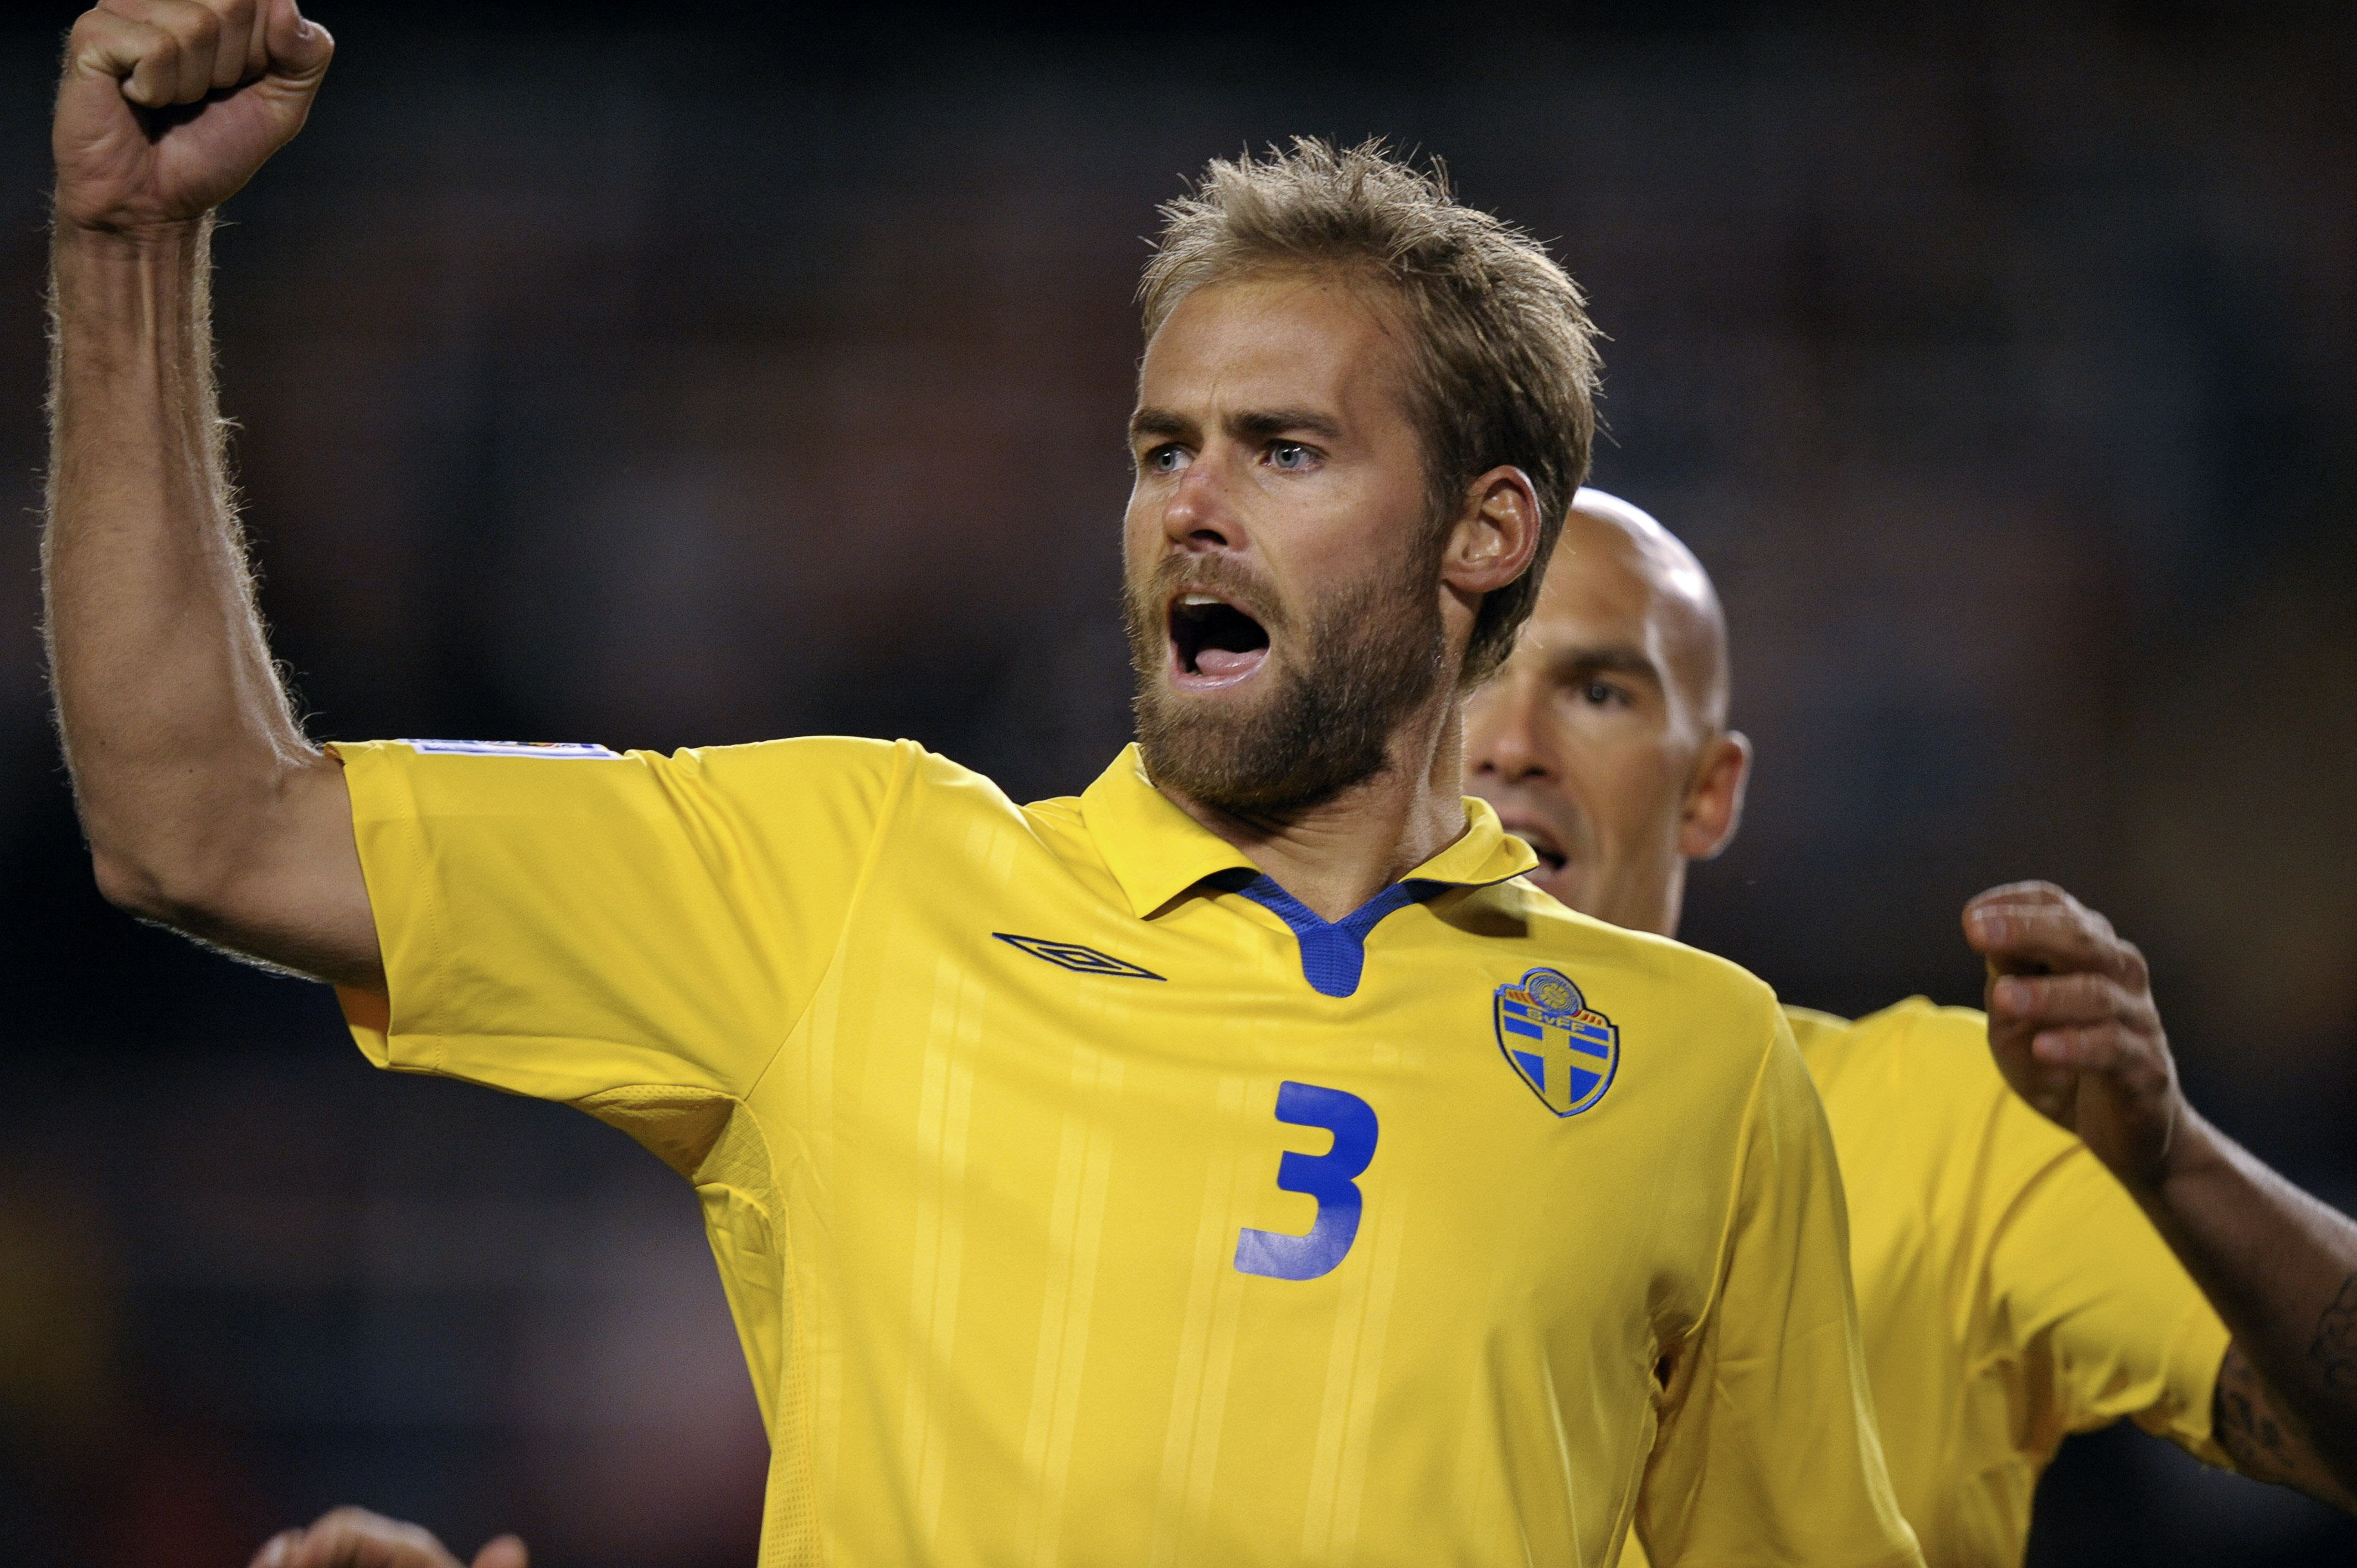 Olof Mellberg, mittback, Olympiakos. Kanske Sveriges viktigaste spelare, utöver Zlatan. Gör sitt sista mästerskap med landslaget.